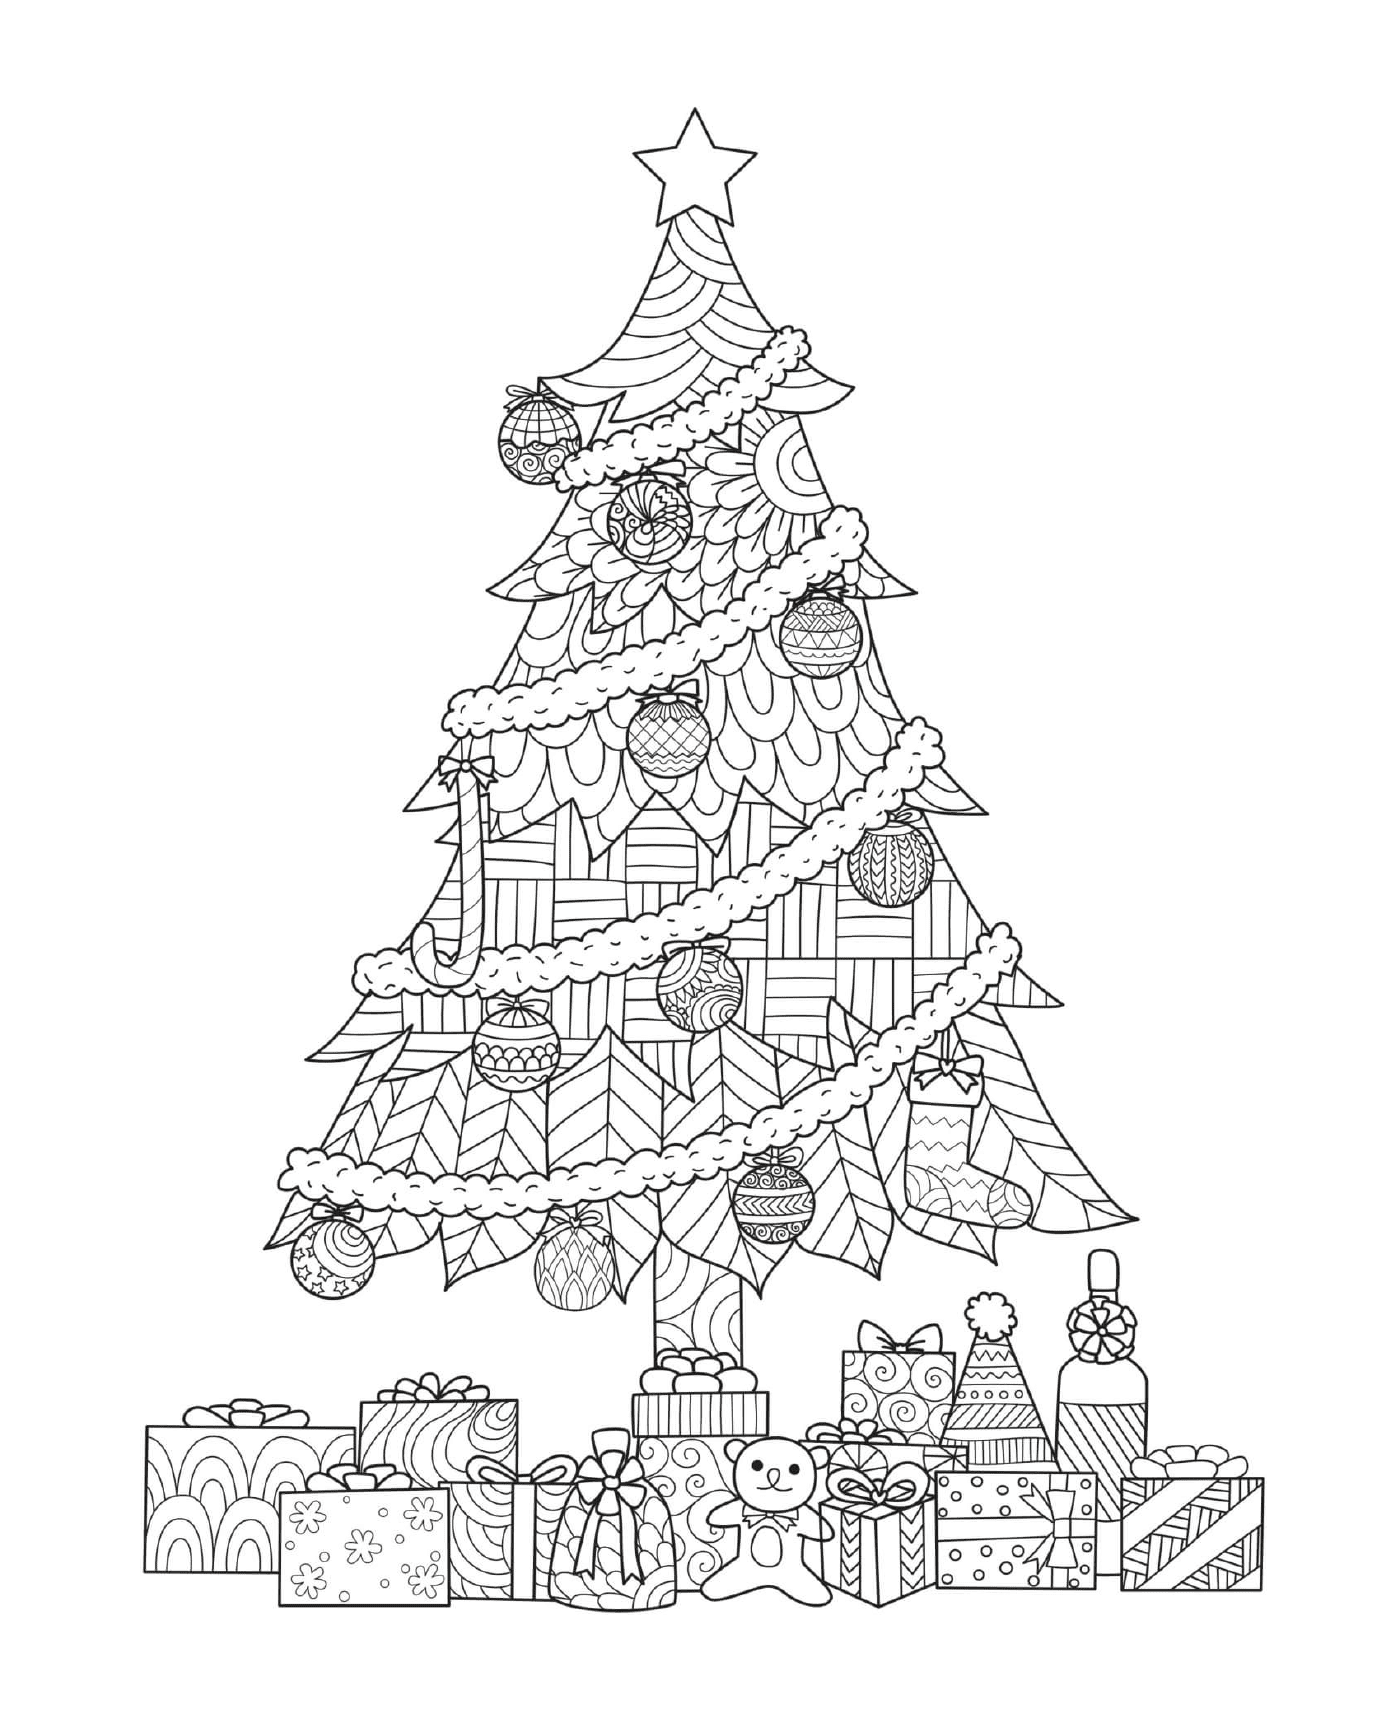  Ein Weihnachtsbaum mit Geschenken darunter 